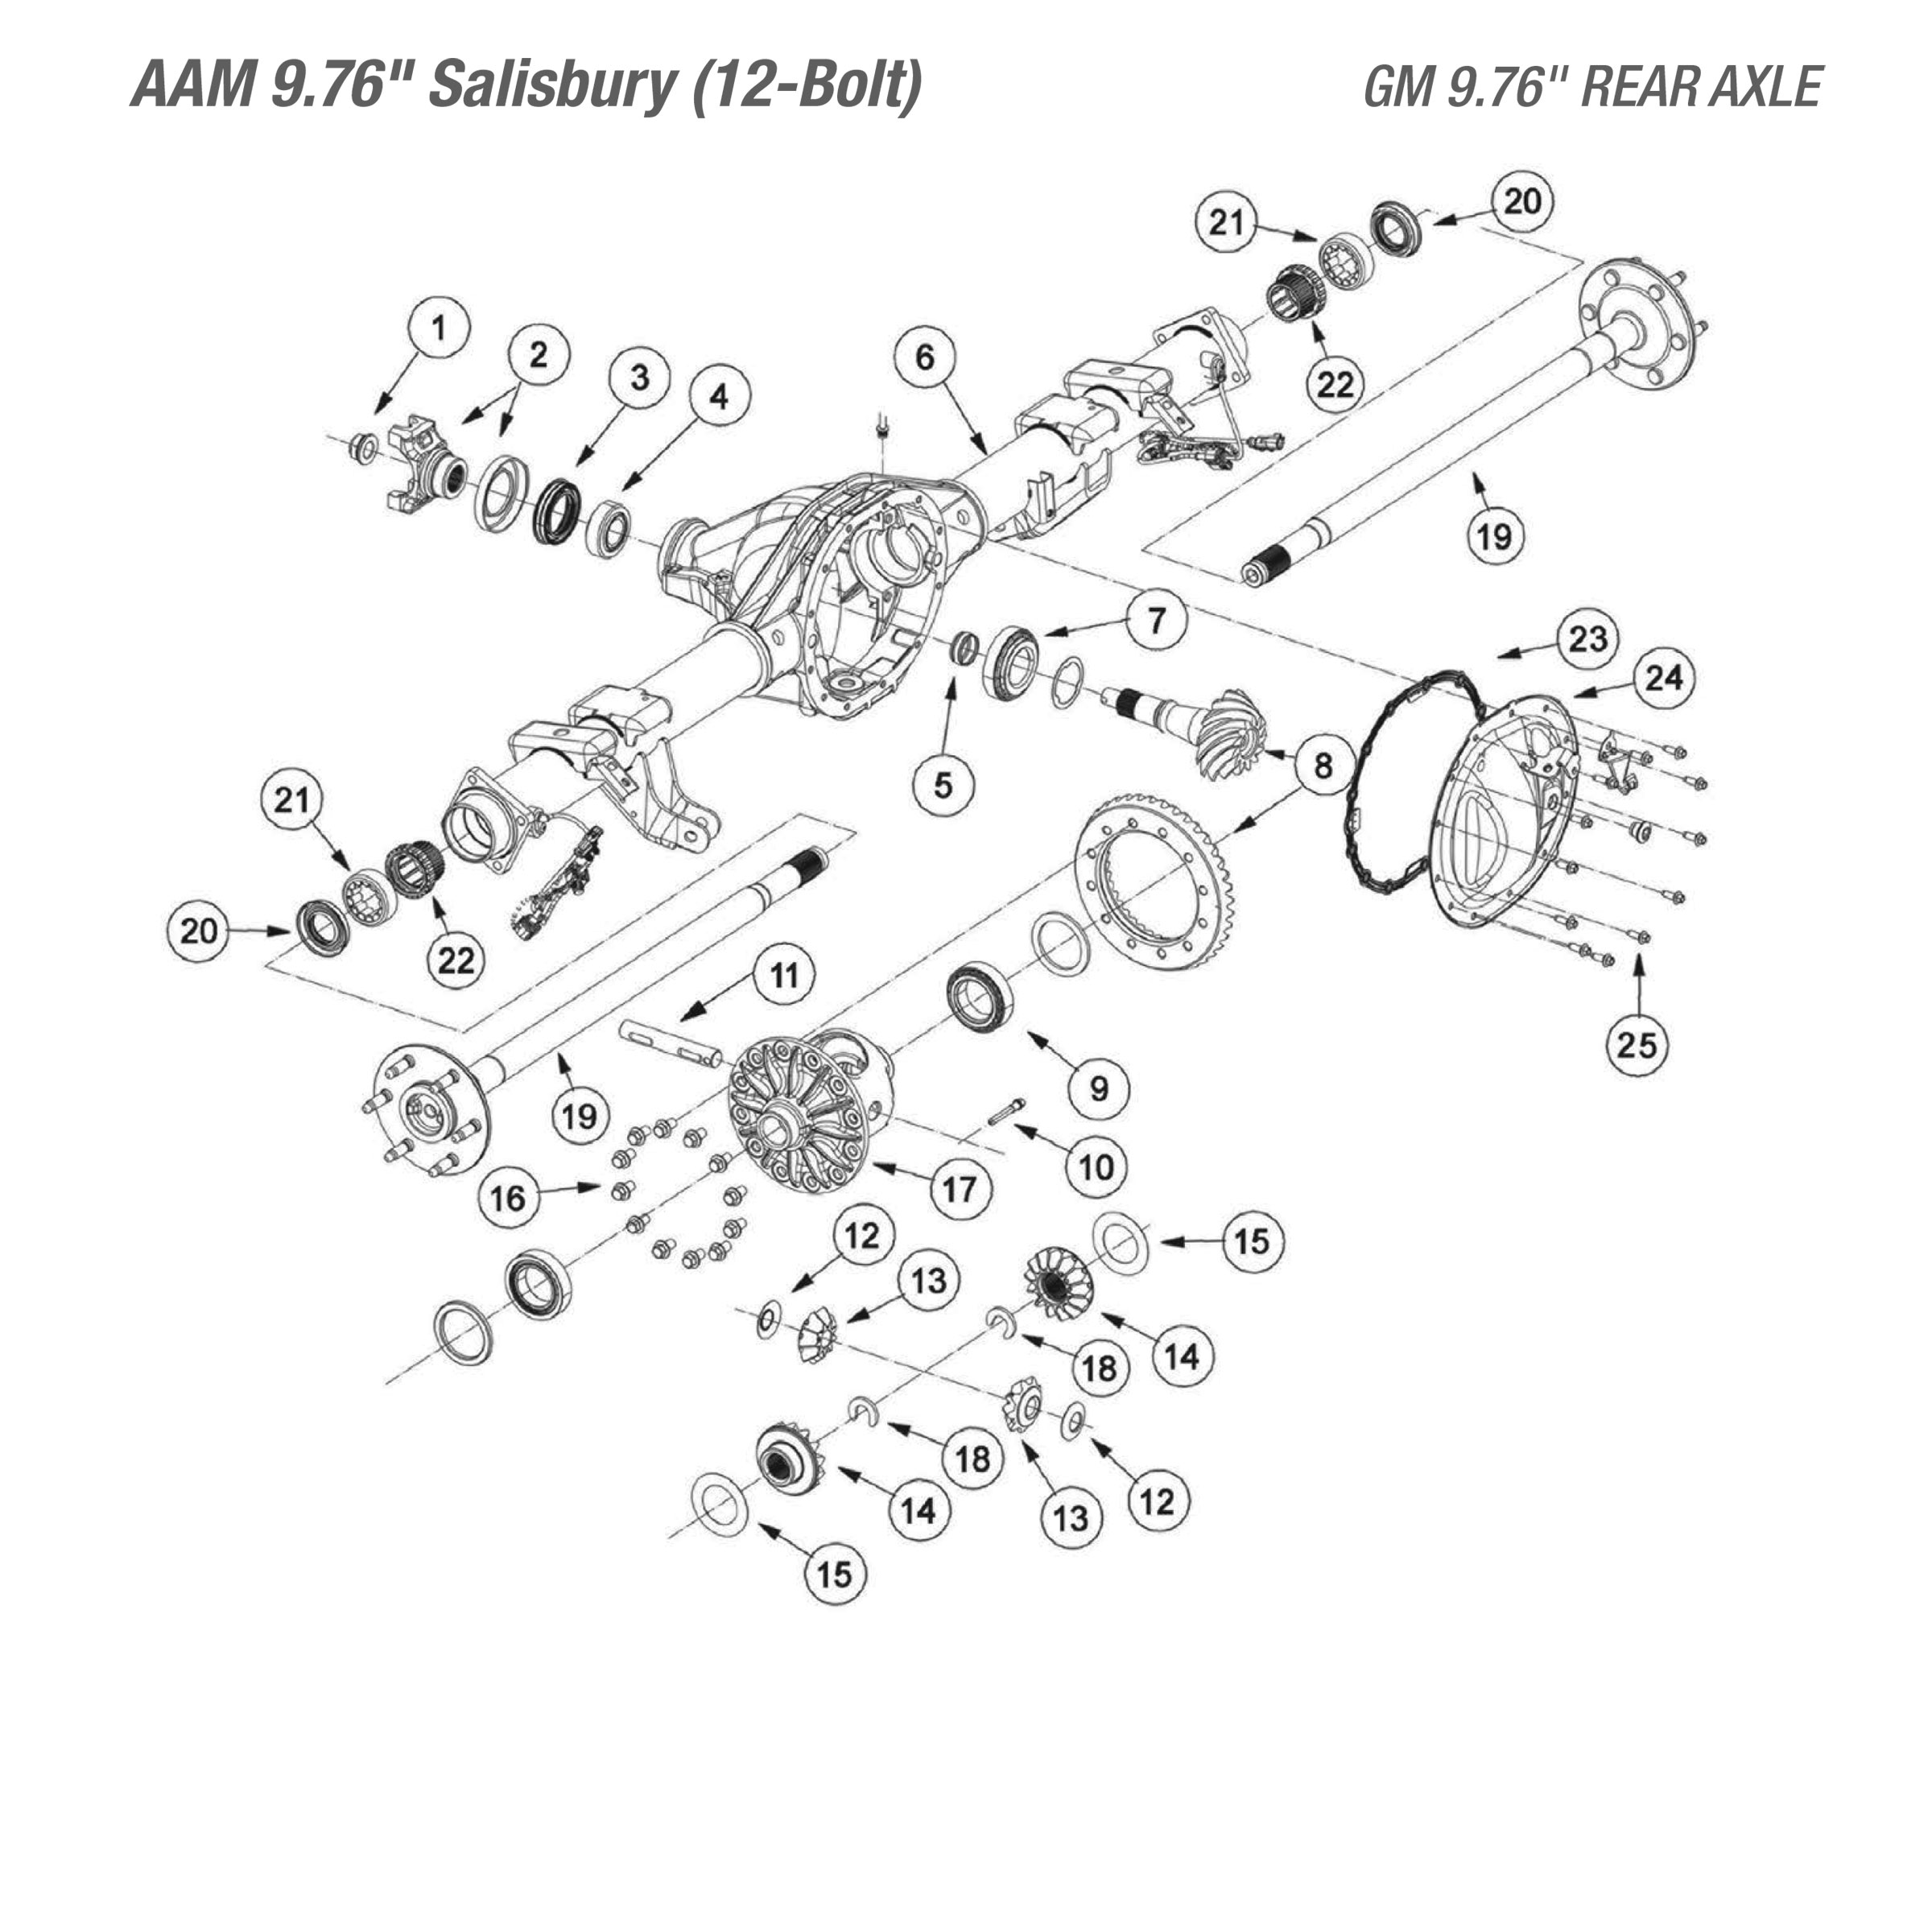 GM 9.76 Rear Axle - Parts Diagram